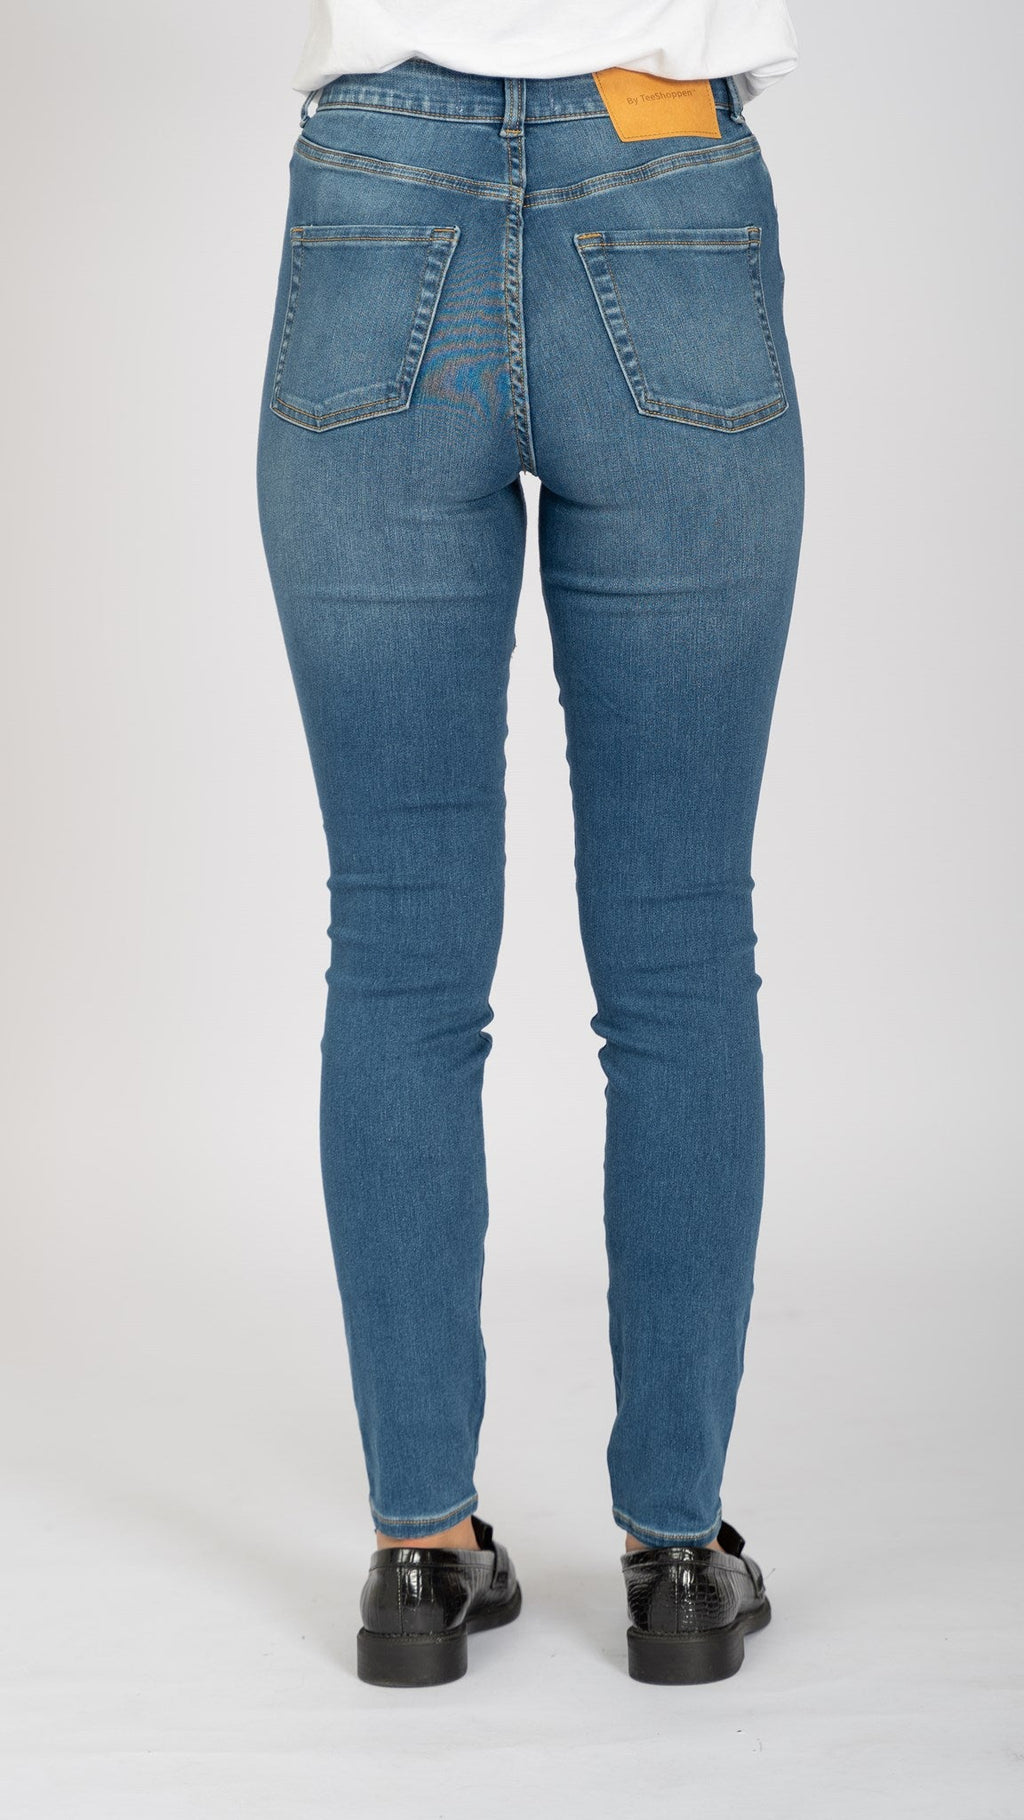 The Original Performance Skinny Jeans - svetlo modrá džínsovina